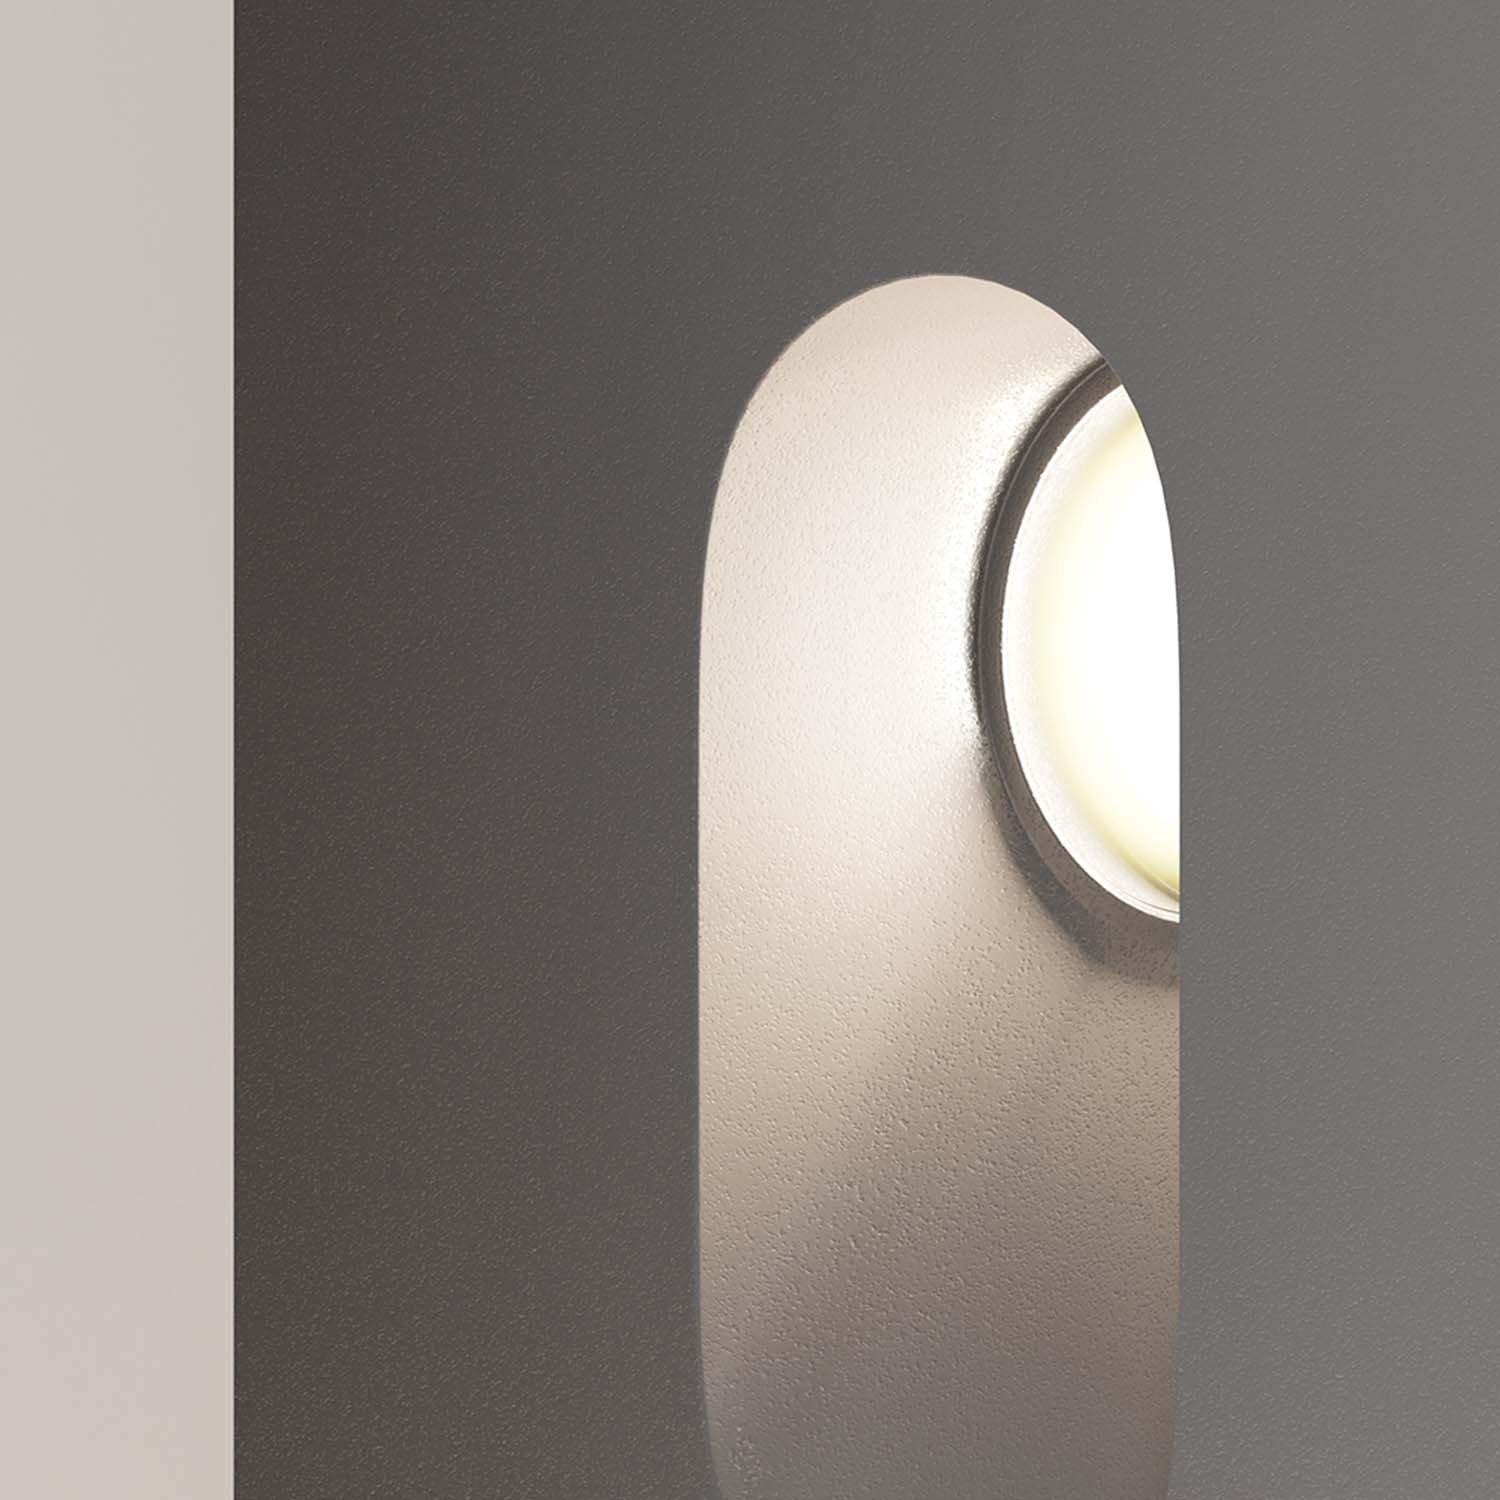 VIA URBANA – Design-Treppenstrahler, innen und außen wasserdicht